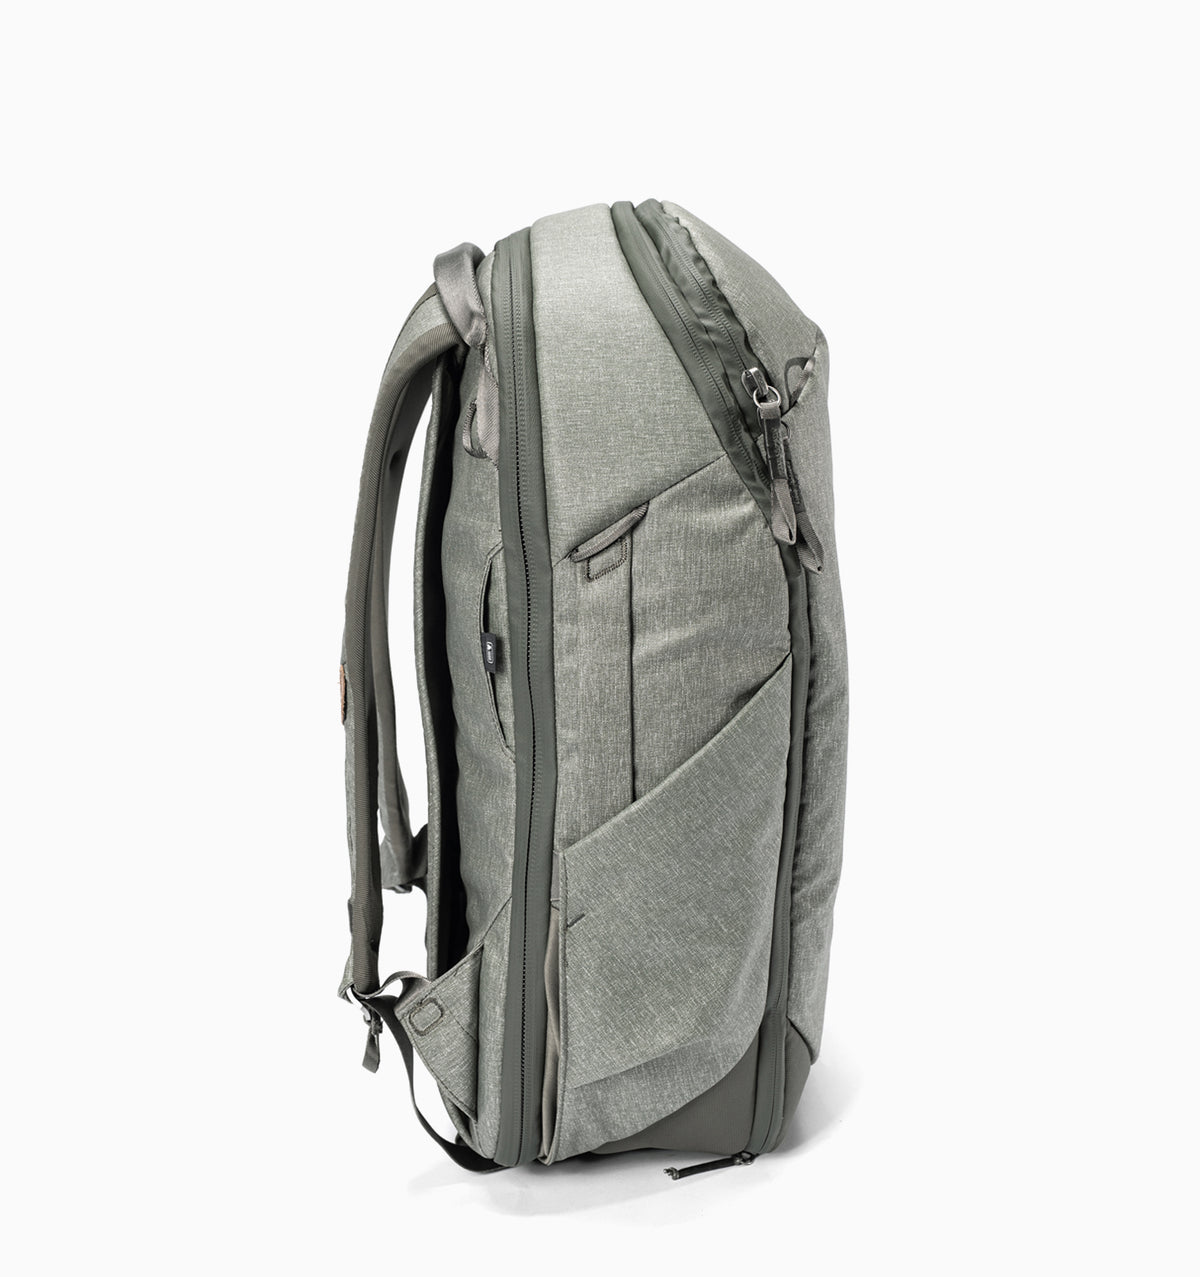 Peak Design 16" Travel Backpack 30L - Sage